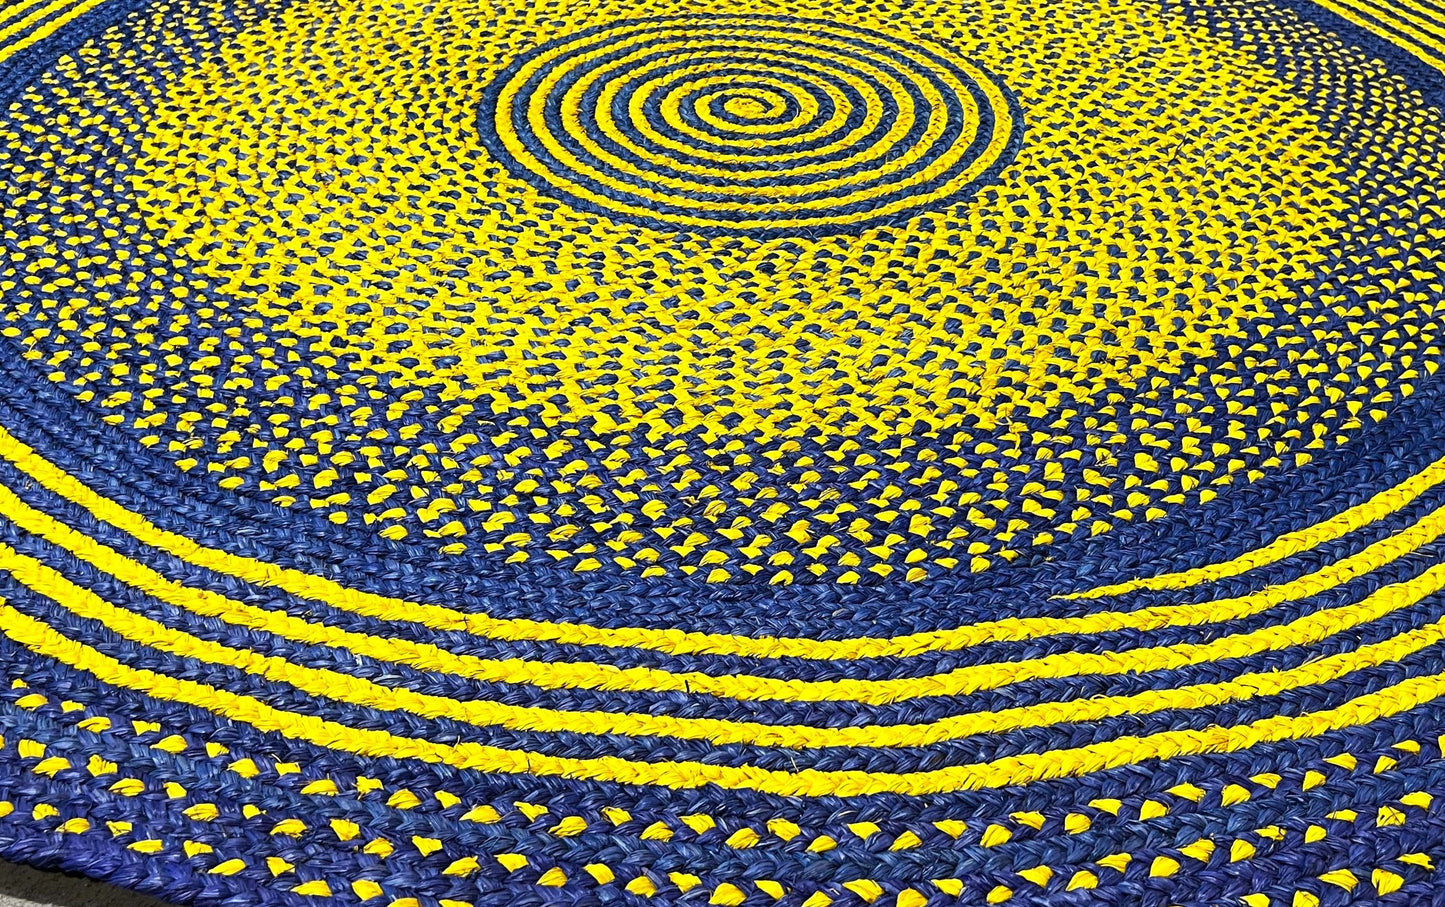 Tapis rond en raphia bleu vif & jaune- Natacha - 200 cm Intimani Ethnique chic